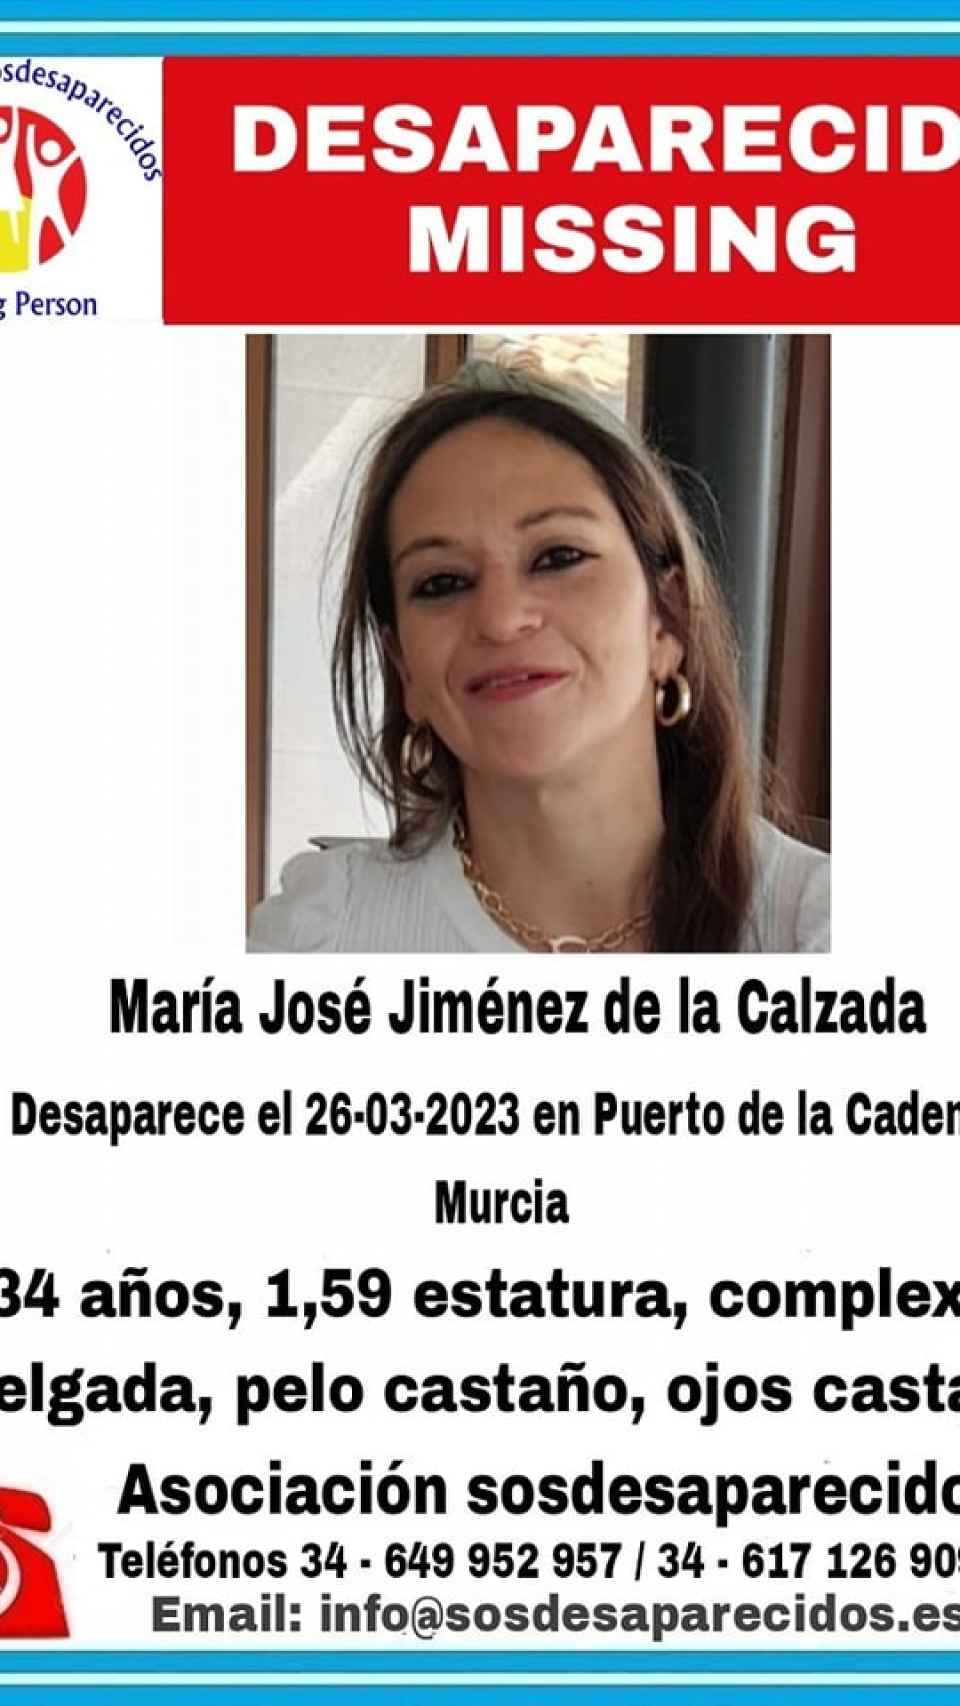 El cartel difundido por SOS Desaparecidos sobre María José Jiménez de la Calzada.